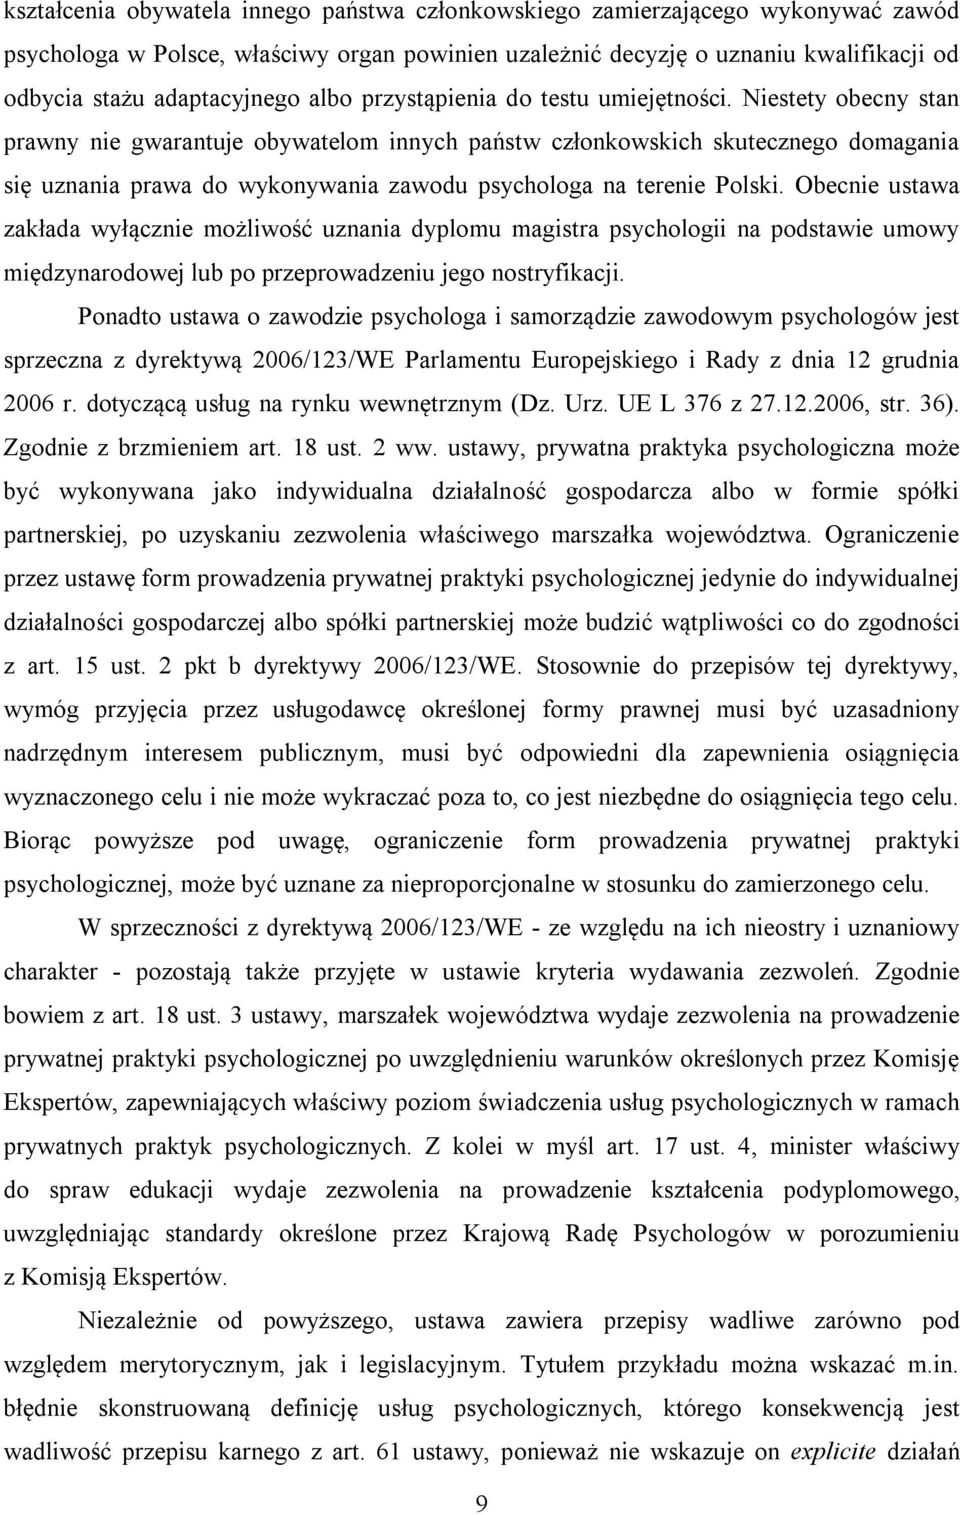 Niestety obecny stan prawny nie gwarantuje obywatelom innych państw członkowskich skutecznego domagania się uznania prawa do wykonywania zawodu psychologa na terenie Polski.